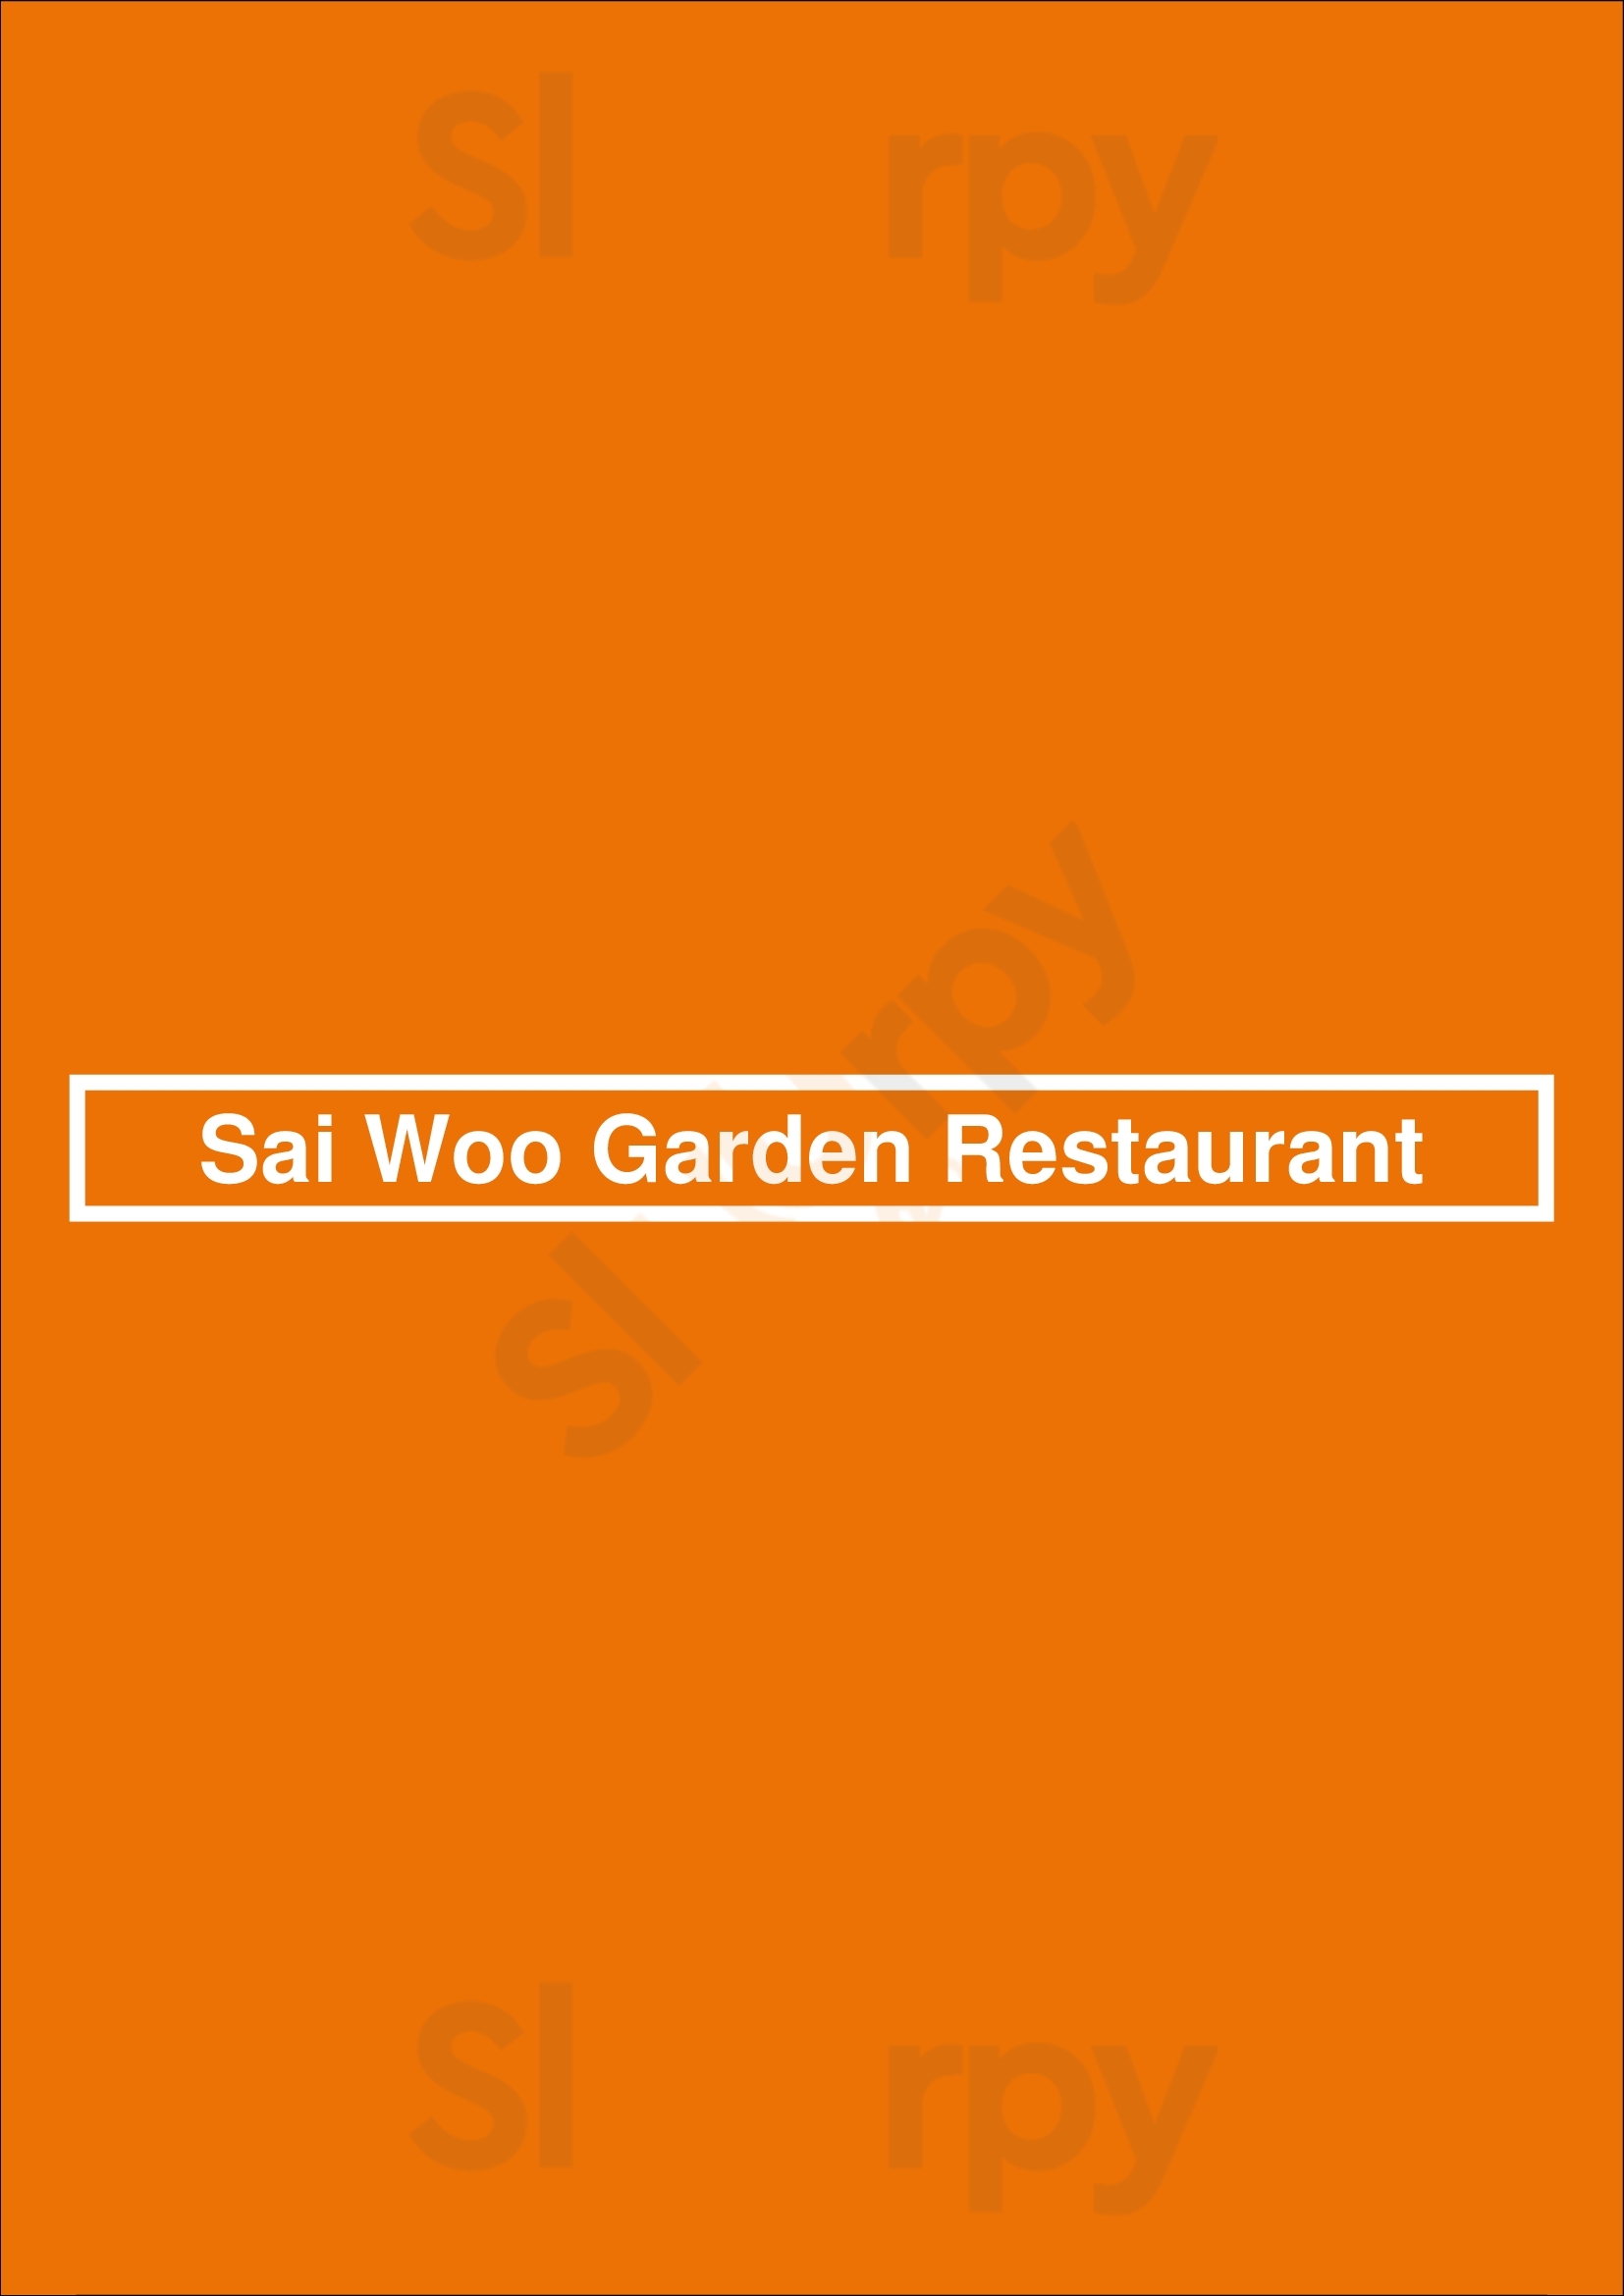 Sai Woo Garden Restaurant Edmonton Menu - 1